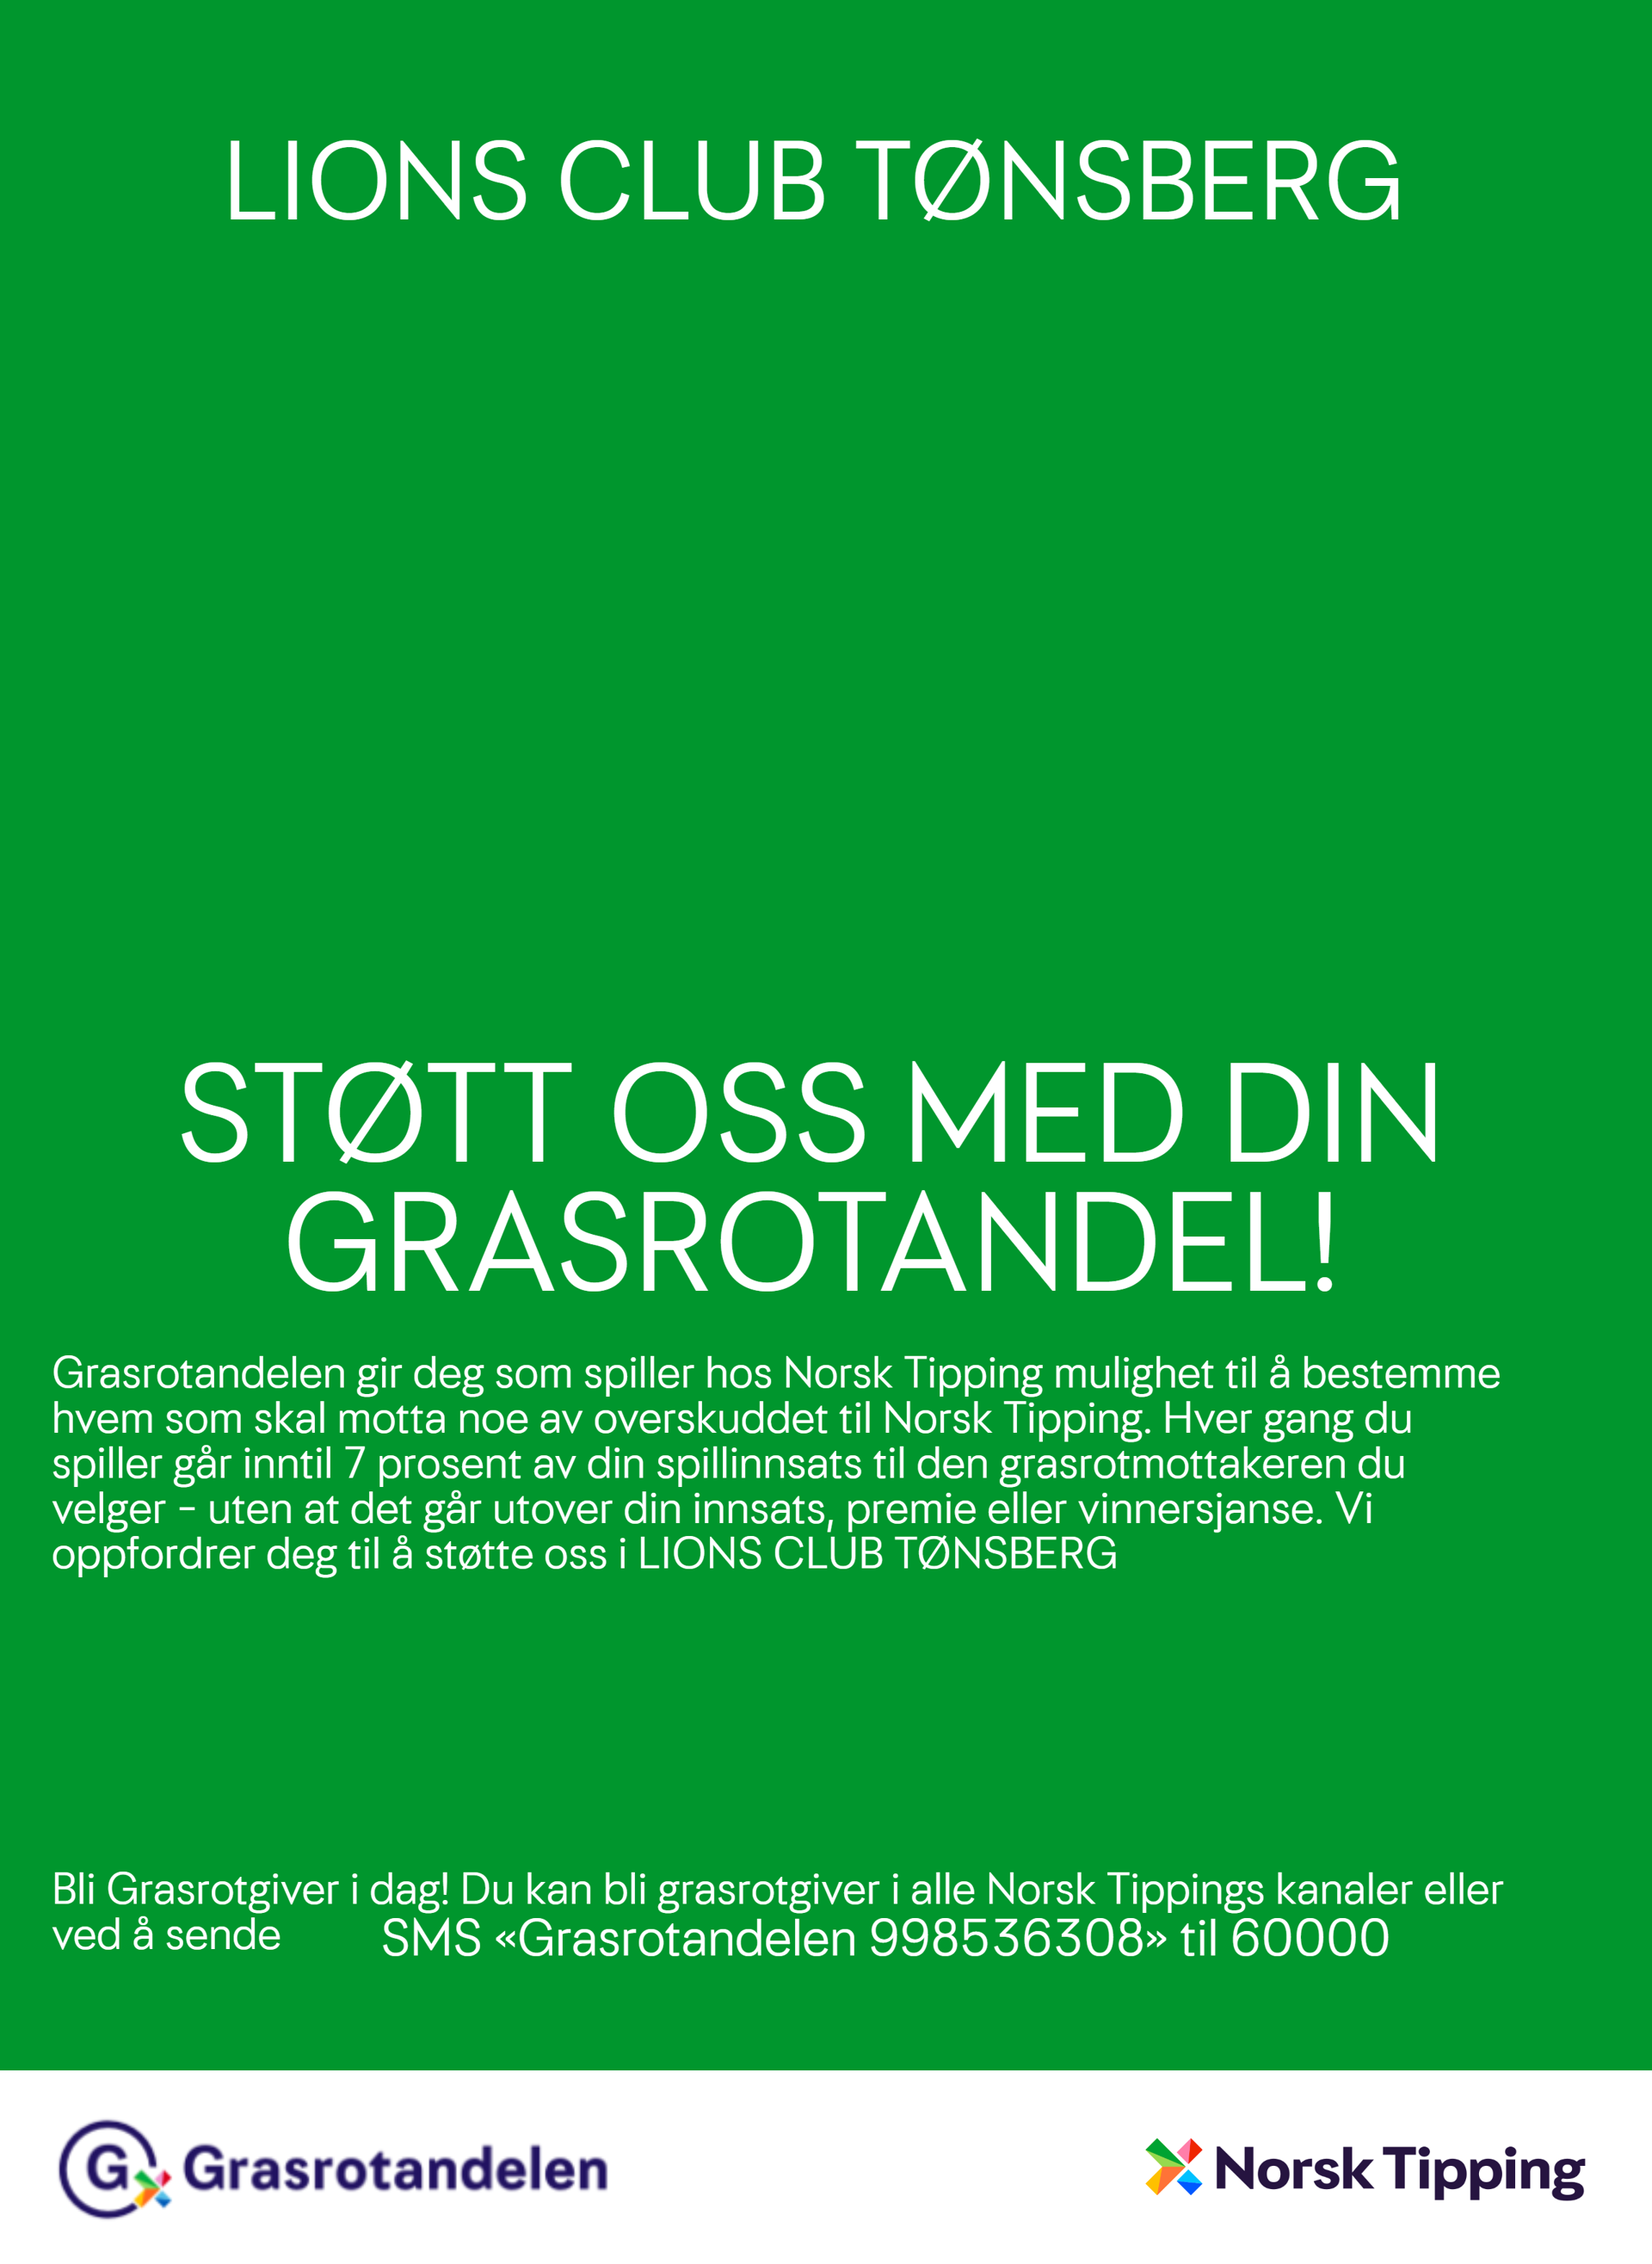 Støtt Lions Club Tønsberg med din Grasrotandel